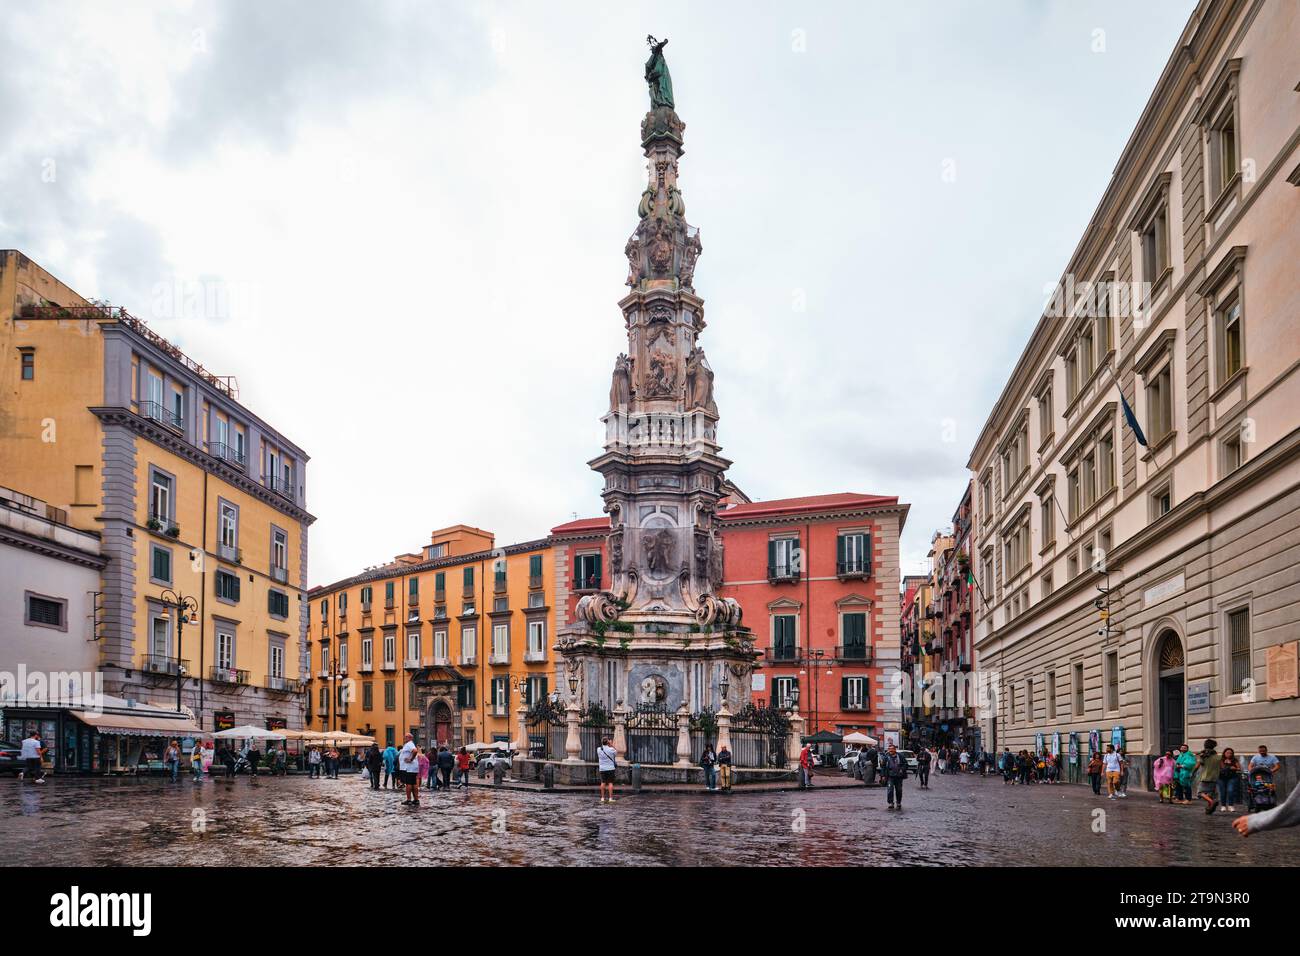 L'obelisco o guglia dell'Immacolata Concezione o guglia dell'Immacolata è un obelisco barocco di Napoli situato in Piazza del Gesu nuovo Foto Stock